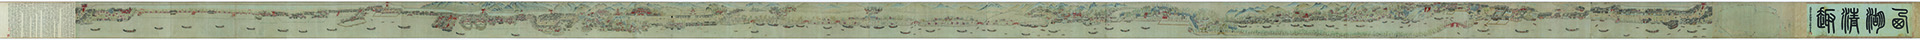 北宋 李嵩 西湖清趣图卷(上部)绢本32.9x1581.1